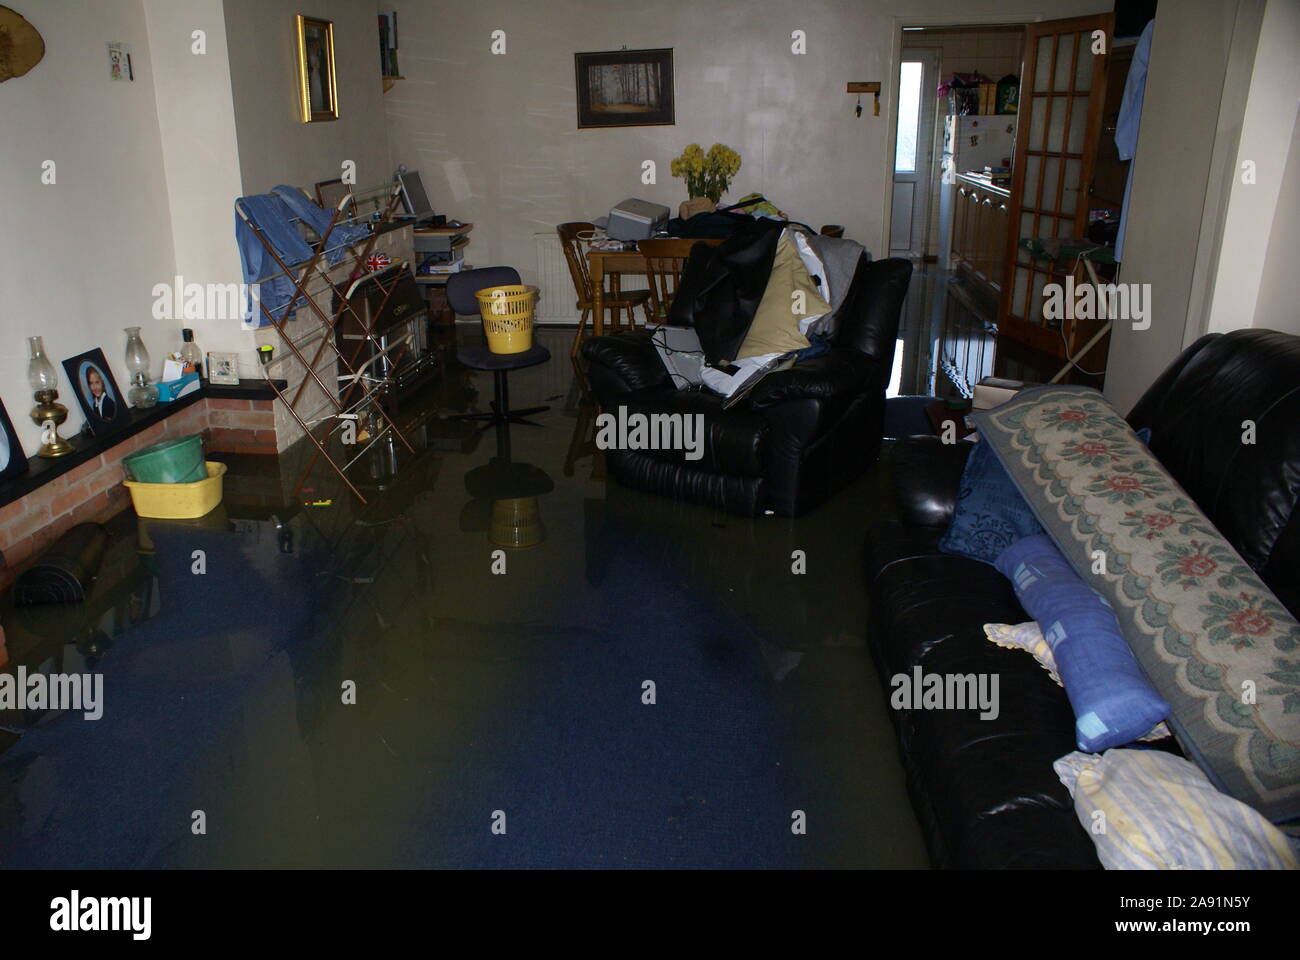 flooded livingroom Stock Photo